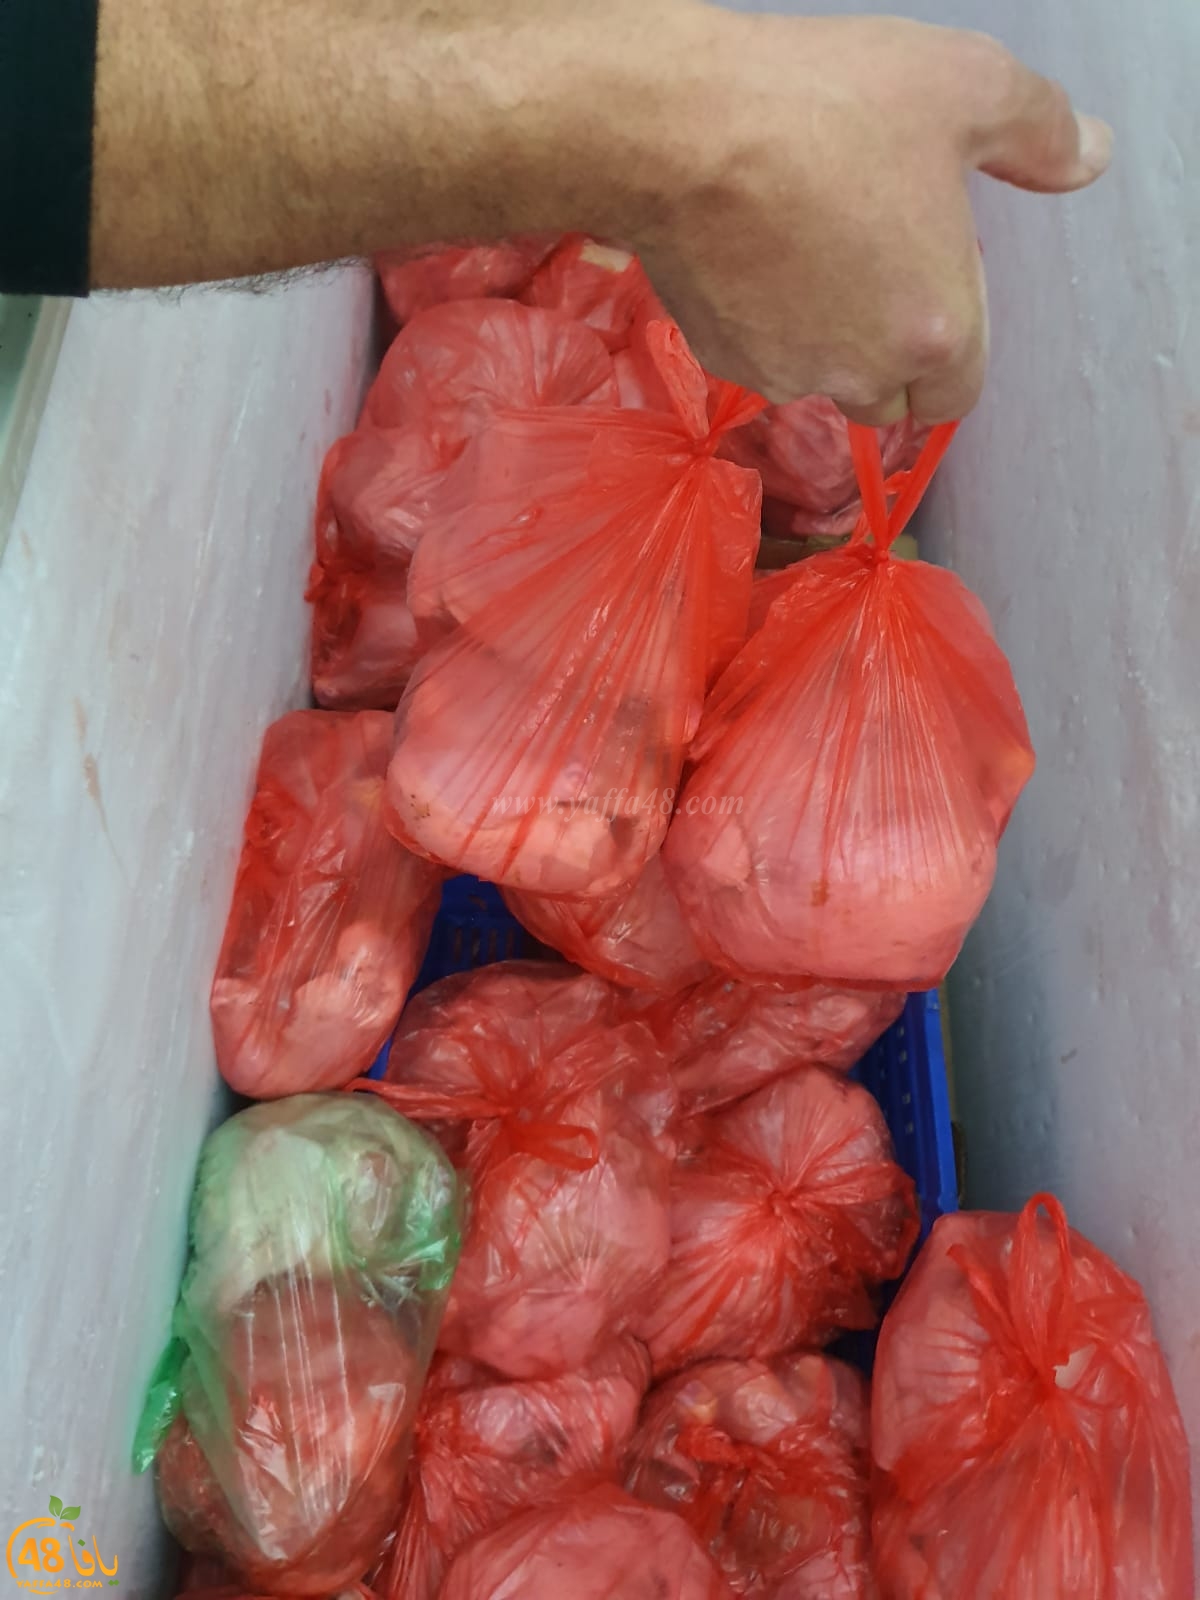 لجنة الزكاة في اللد تستقبل شاحنة مواد غذائية لتوزيعها على العائلات المستورة